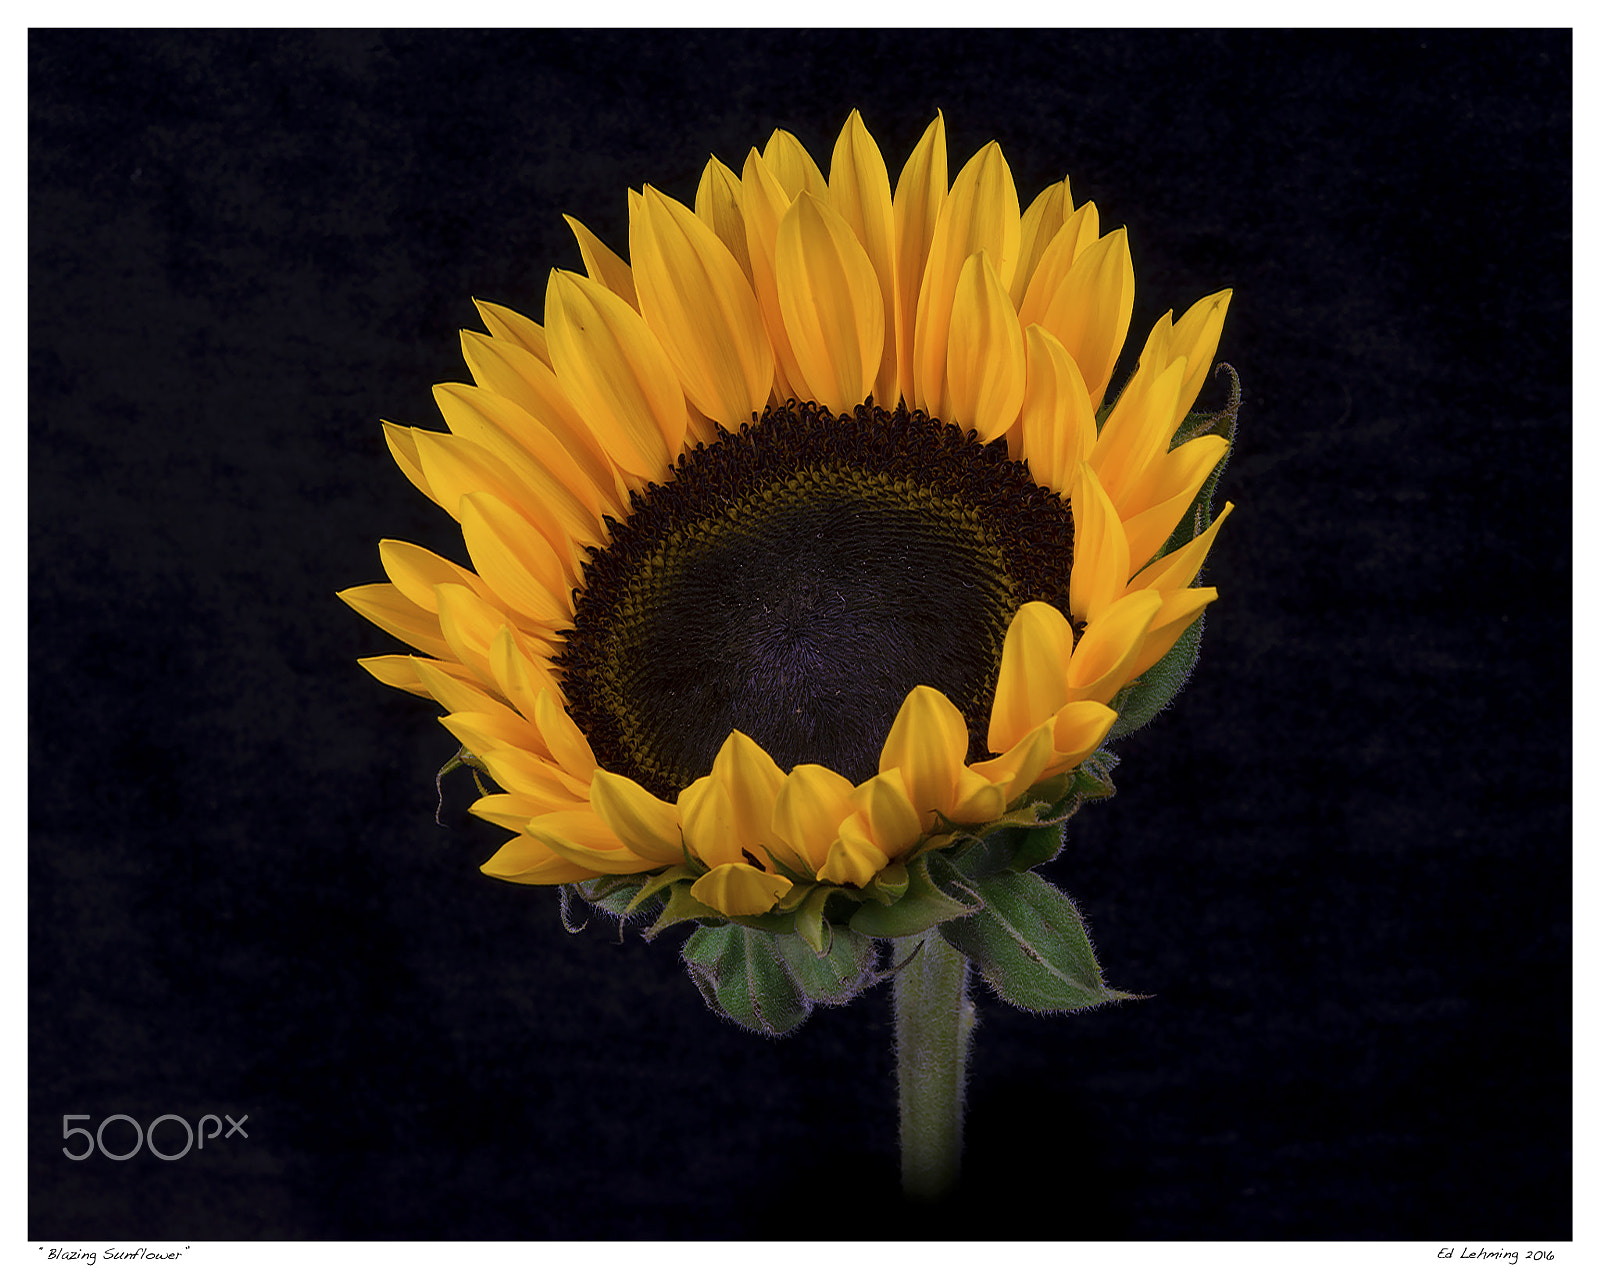 AF Zoom-Nikkor 28-70mm f/3.5-4.5D sample photo. Blazing sunflower photography